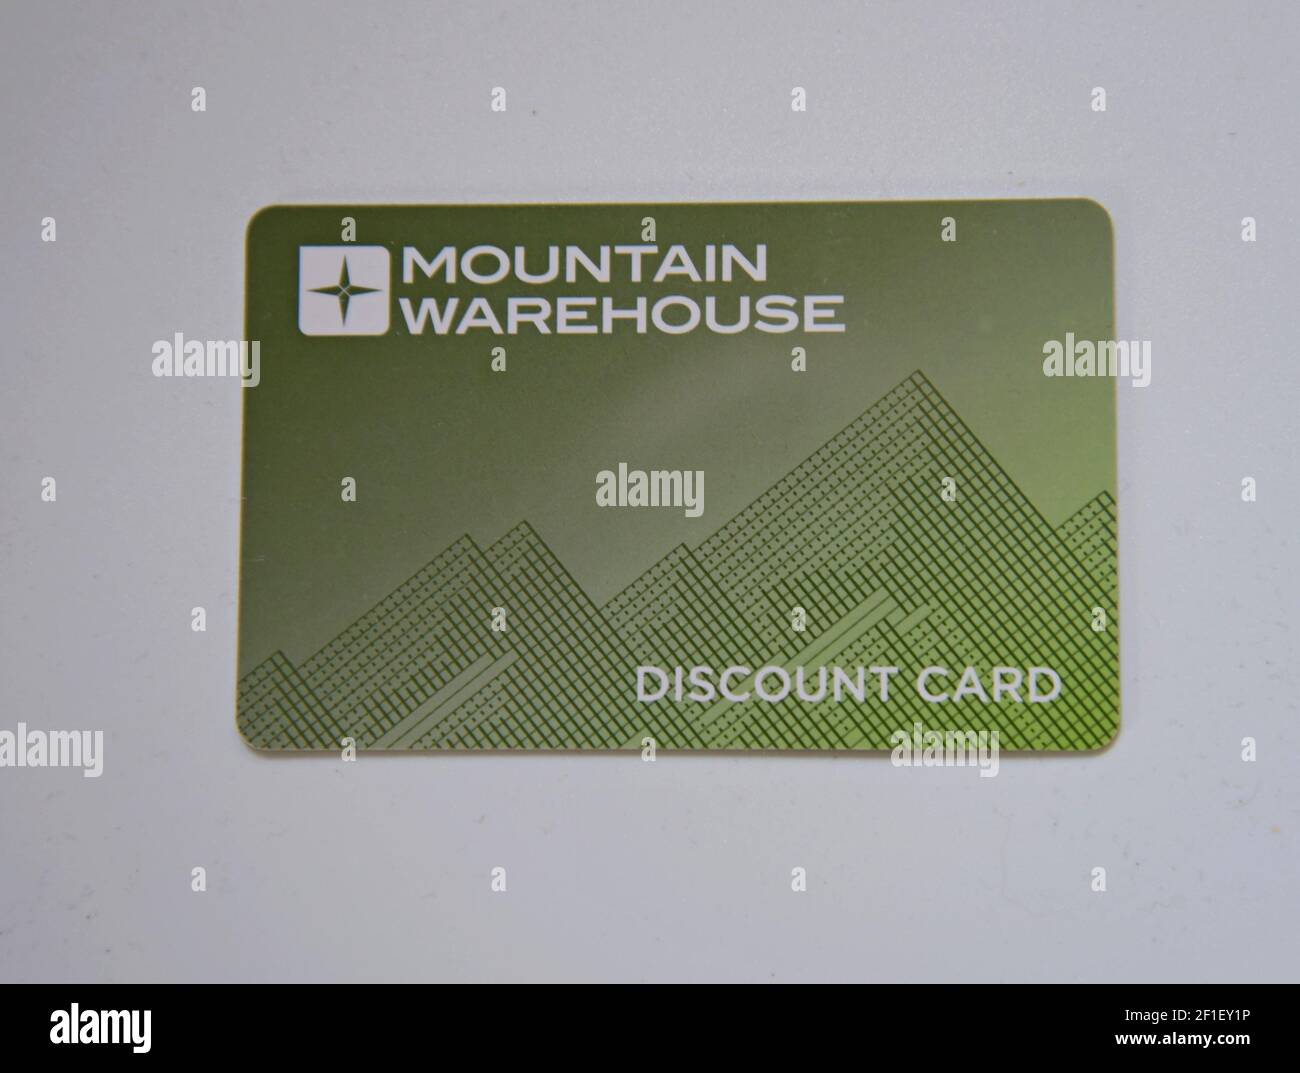 Eine Discountkarte für Mountain Warehouse, eine britische & irische Kette von Outdoor- und Camping-Shops Stockfoto